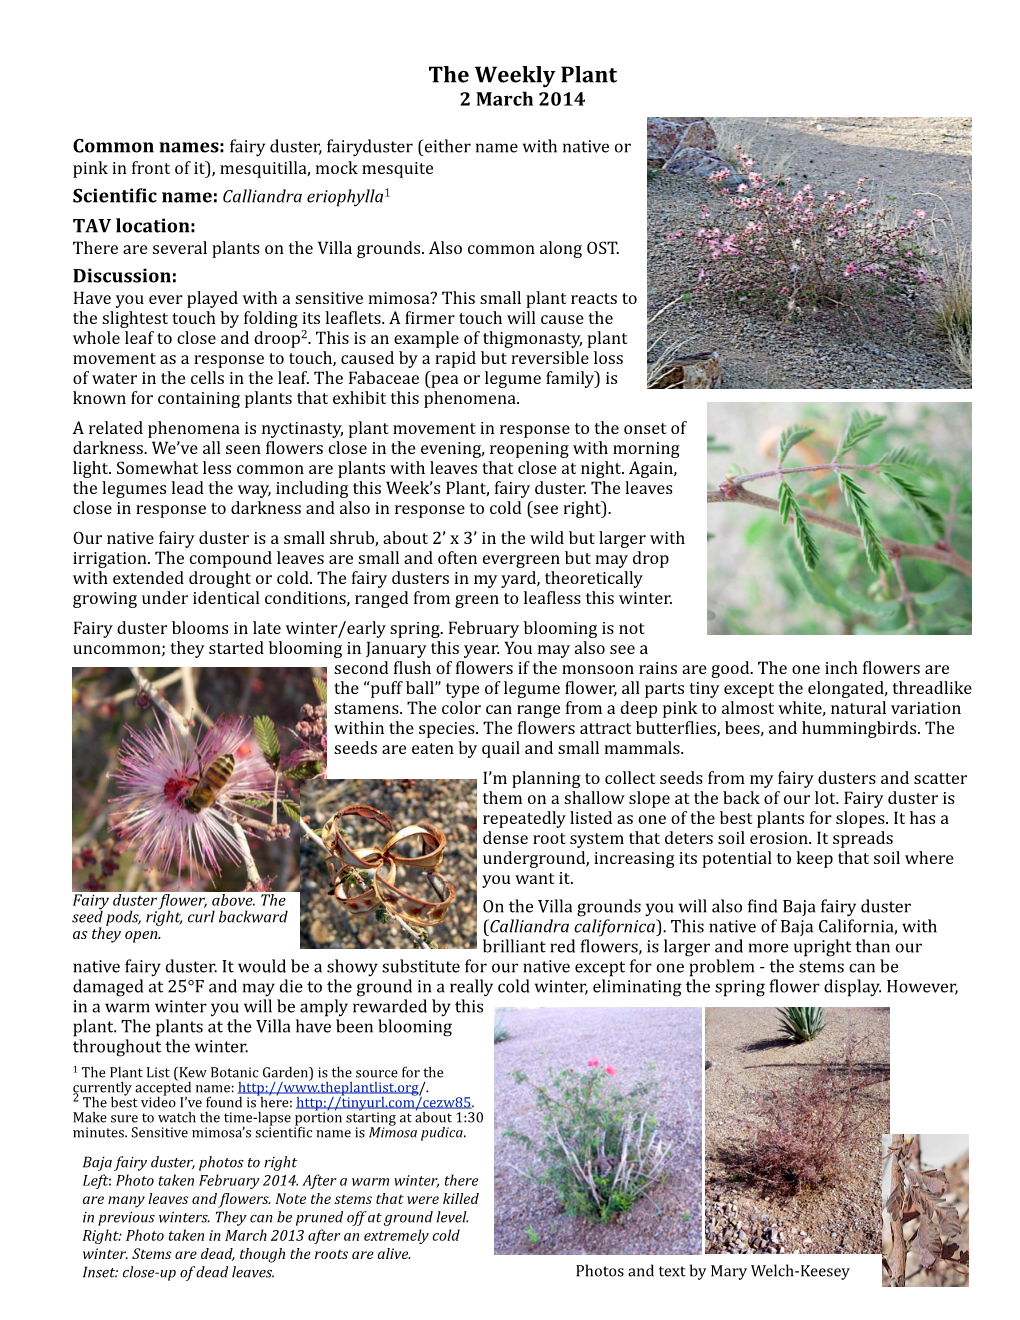 Calliandra Eriophylla Fairy Duster 2Mar2014